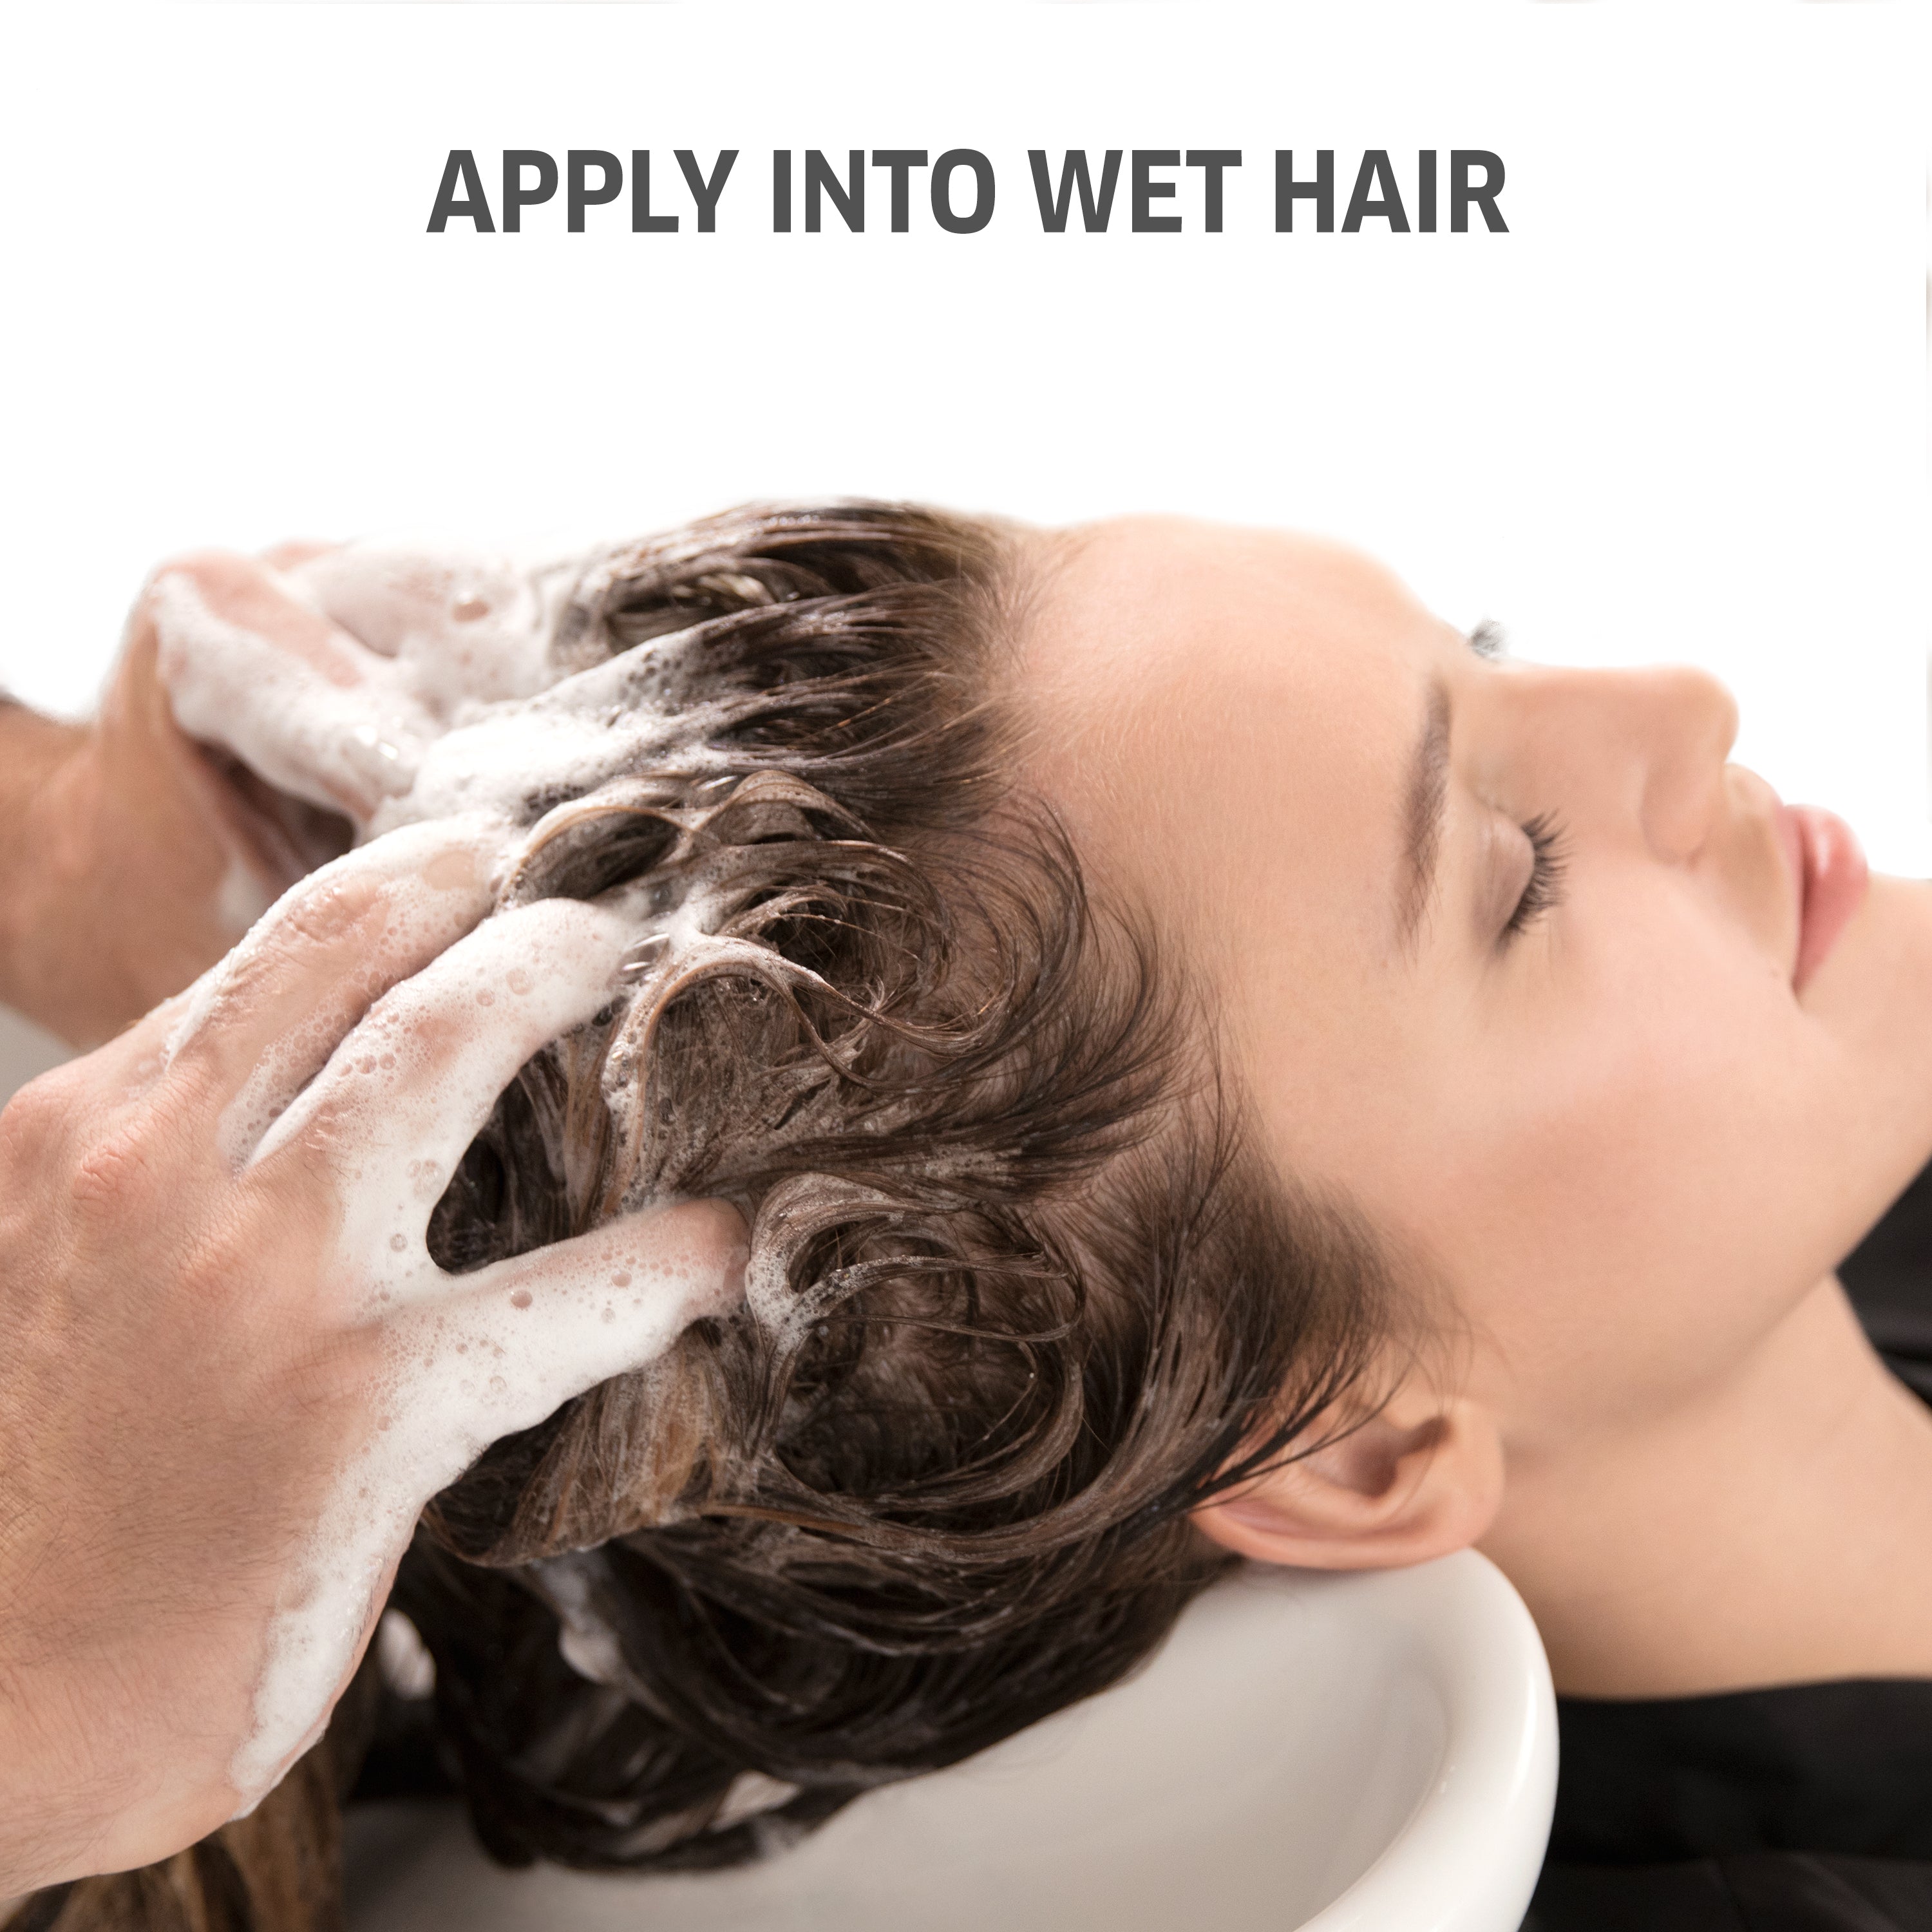 Wella Professional Invigo Shampoo 250 ML Senso Calm